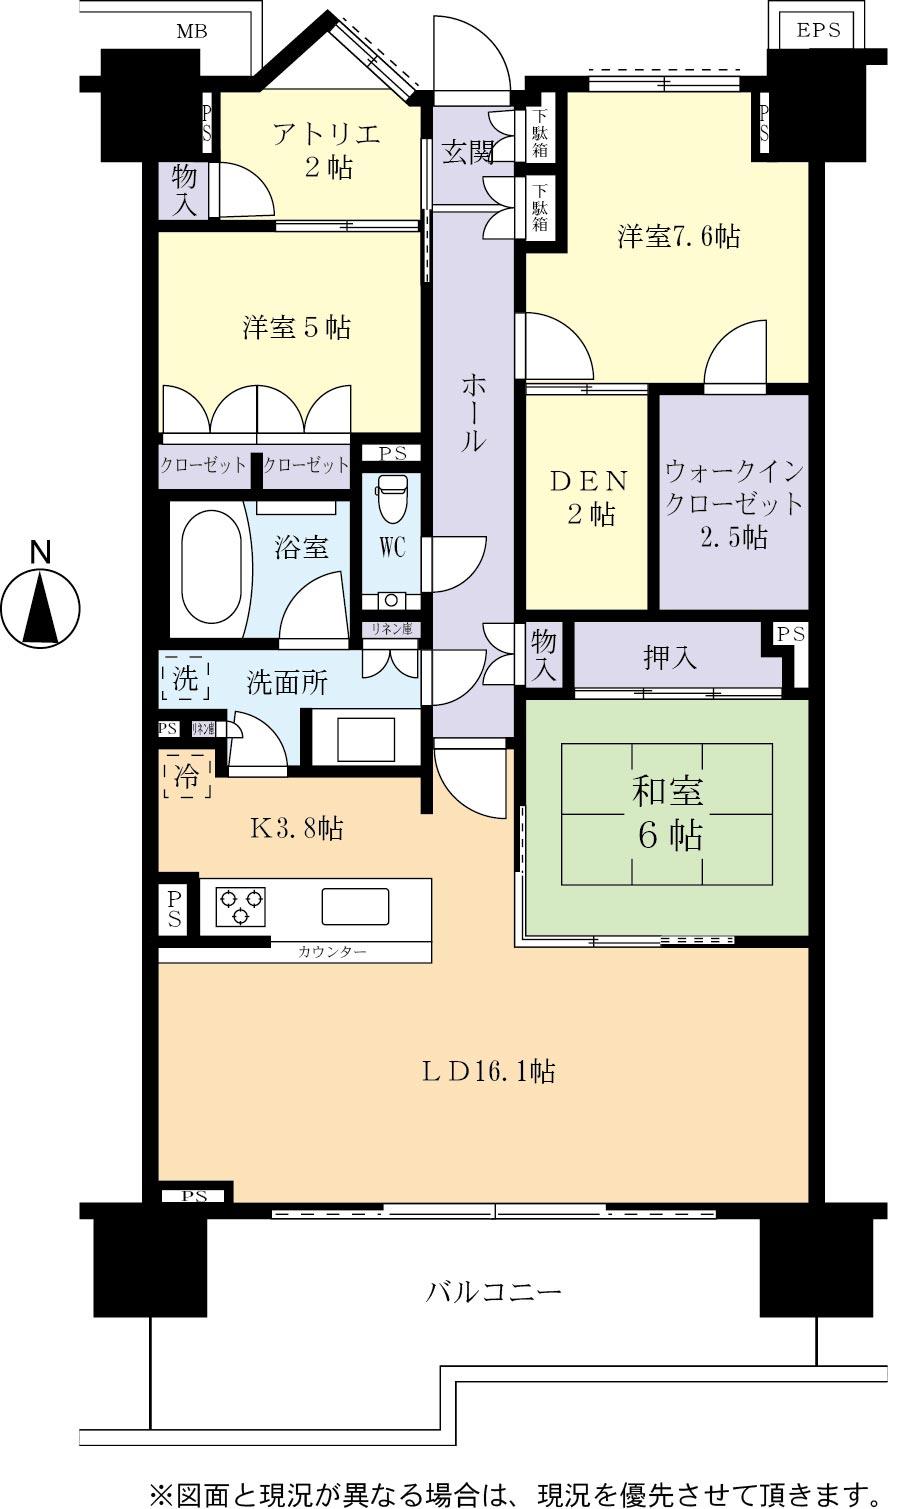 Floor plan. 3LDK + 2S (storeroom), Price 29,800,000 yen, Footprint 100 sq m , Balcony area 17.78 sq m